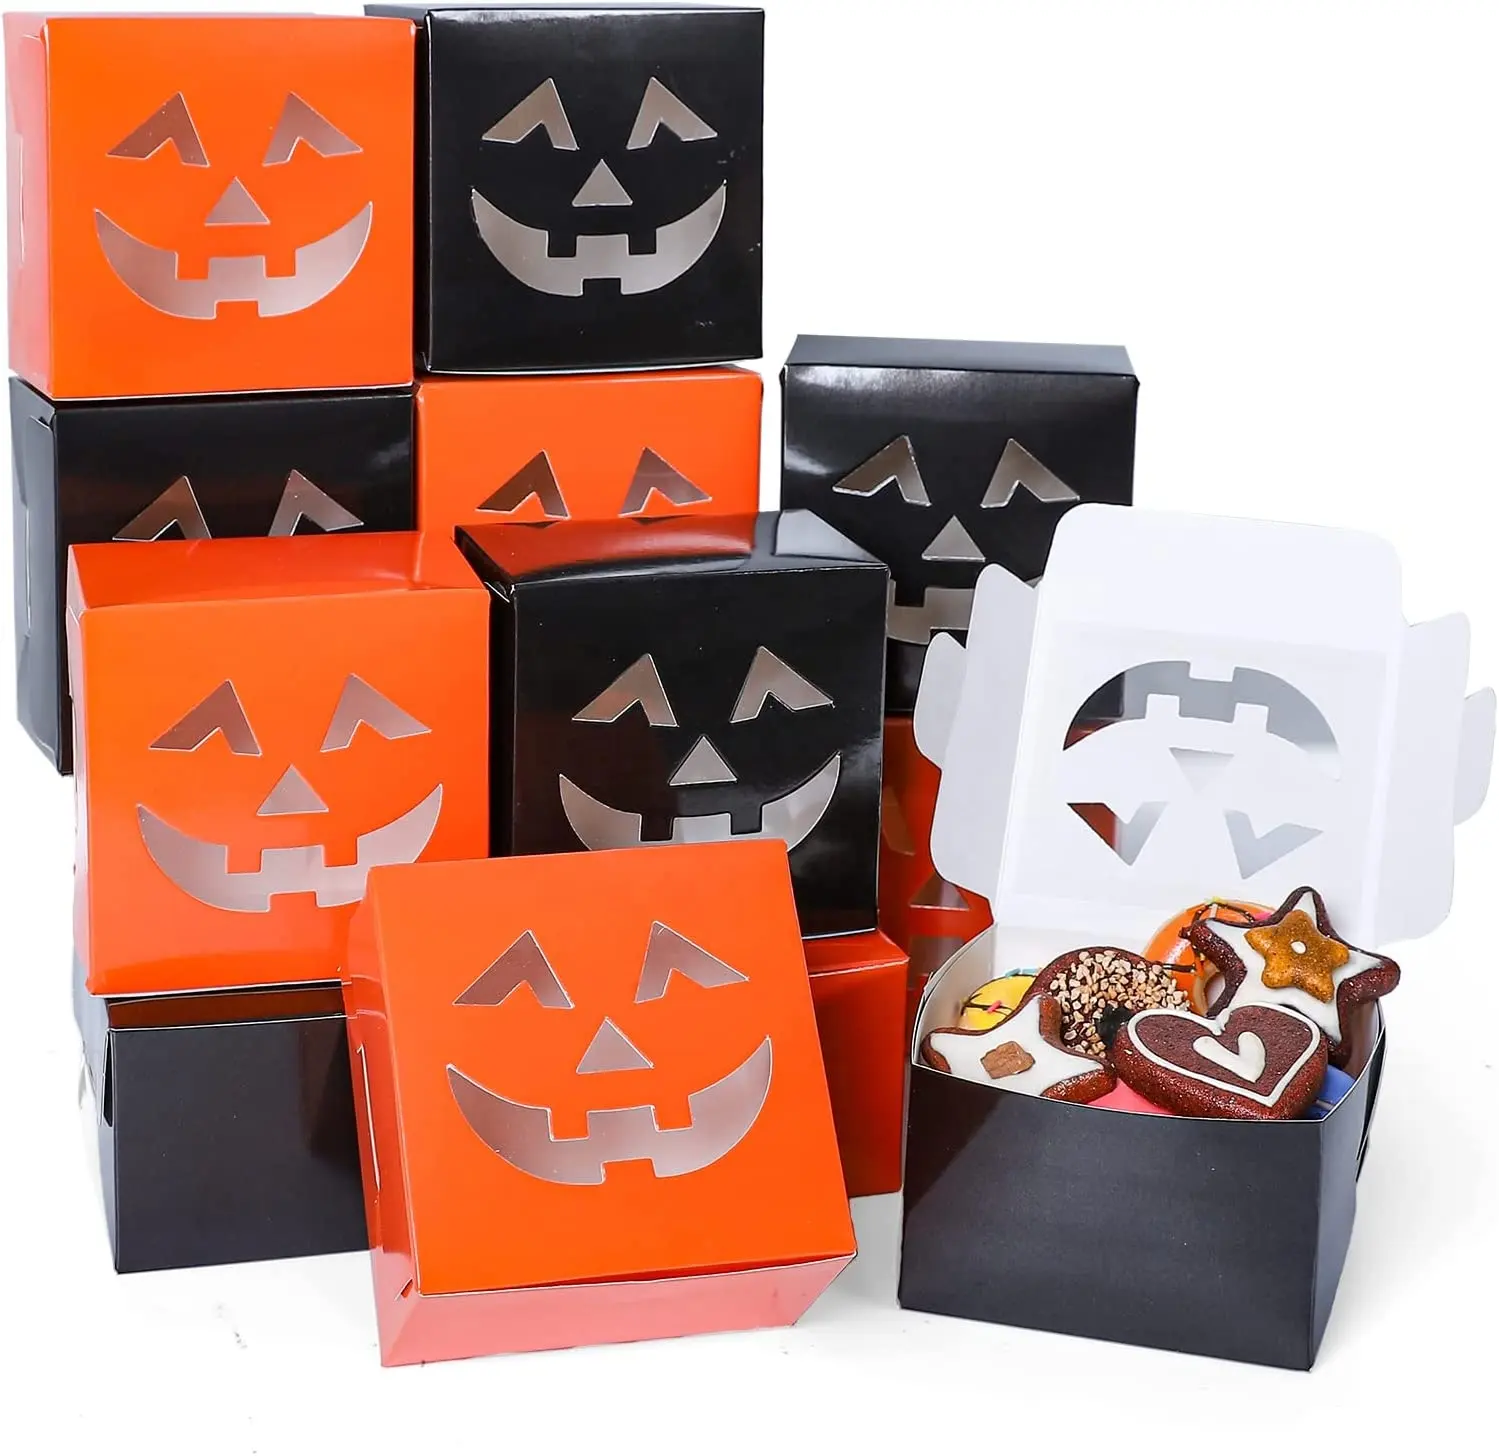 Handmade Baking Halloween điều trị hộp cam đen bí ngô mặt hình dạng cửa sổ thủ thuật hoặc điều trị các tông Giấy Bánh hộp 12 inch